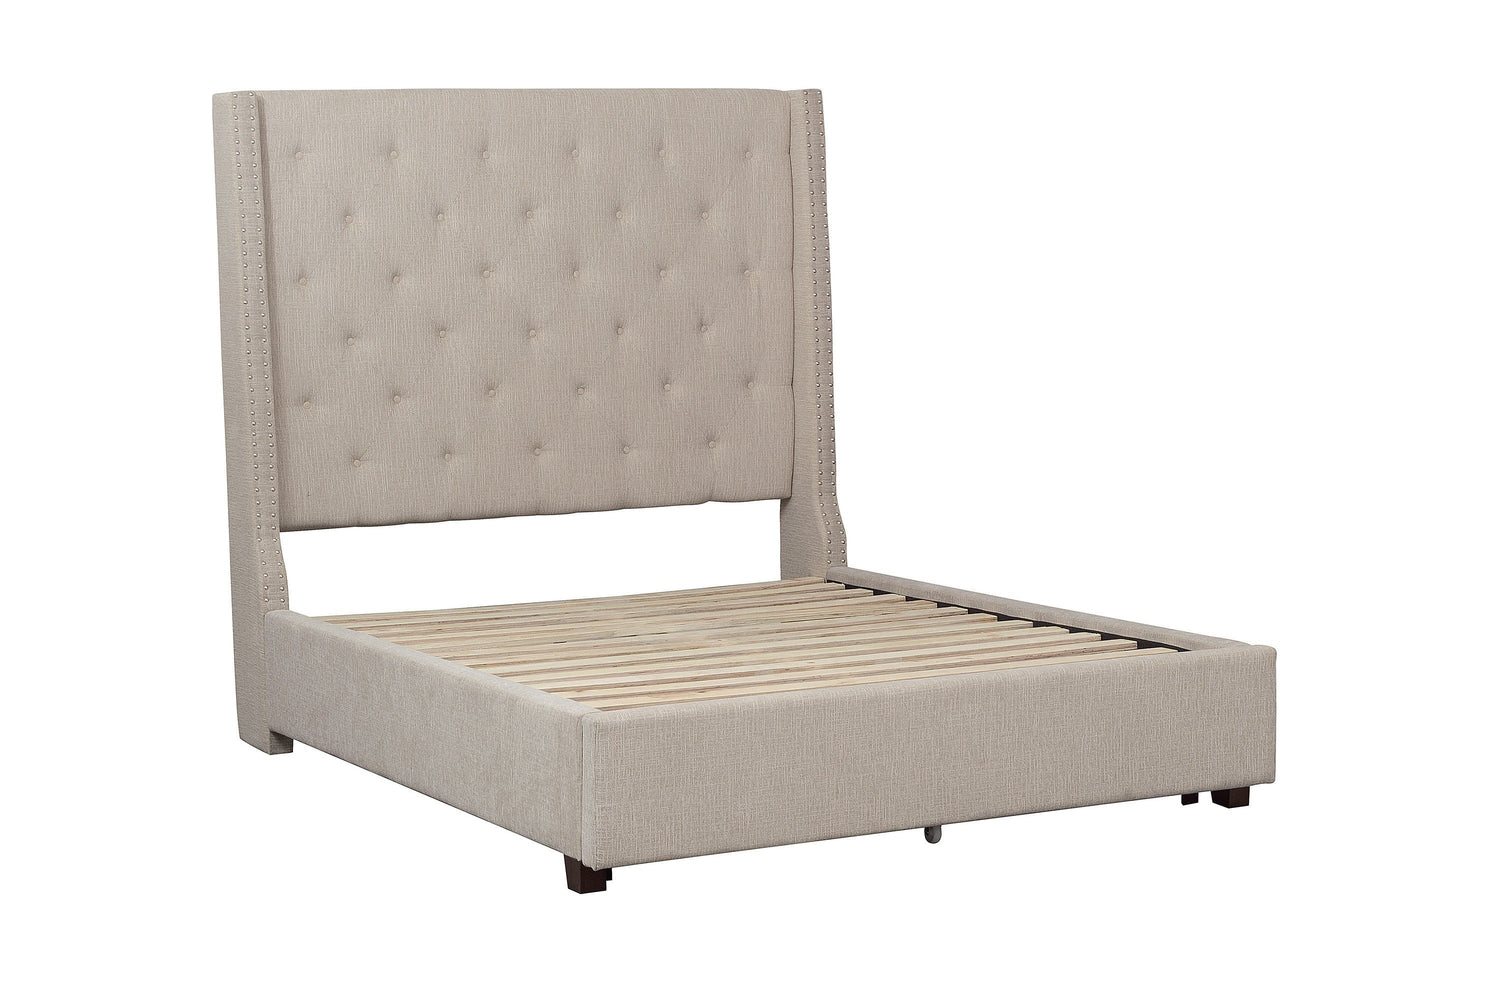 https://bienhome.com/cdn/shop/products/fairborn-beige-queen-upholstered-platform-bed-set_5877be-1_5877be-3-bien-home-furniture-_-electronics-2.jpg?v=1680544068&width=1500